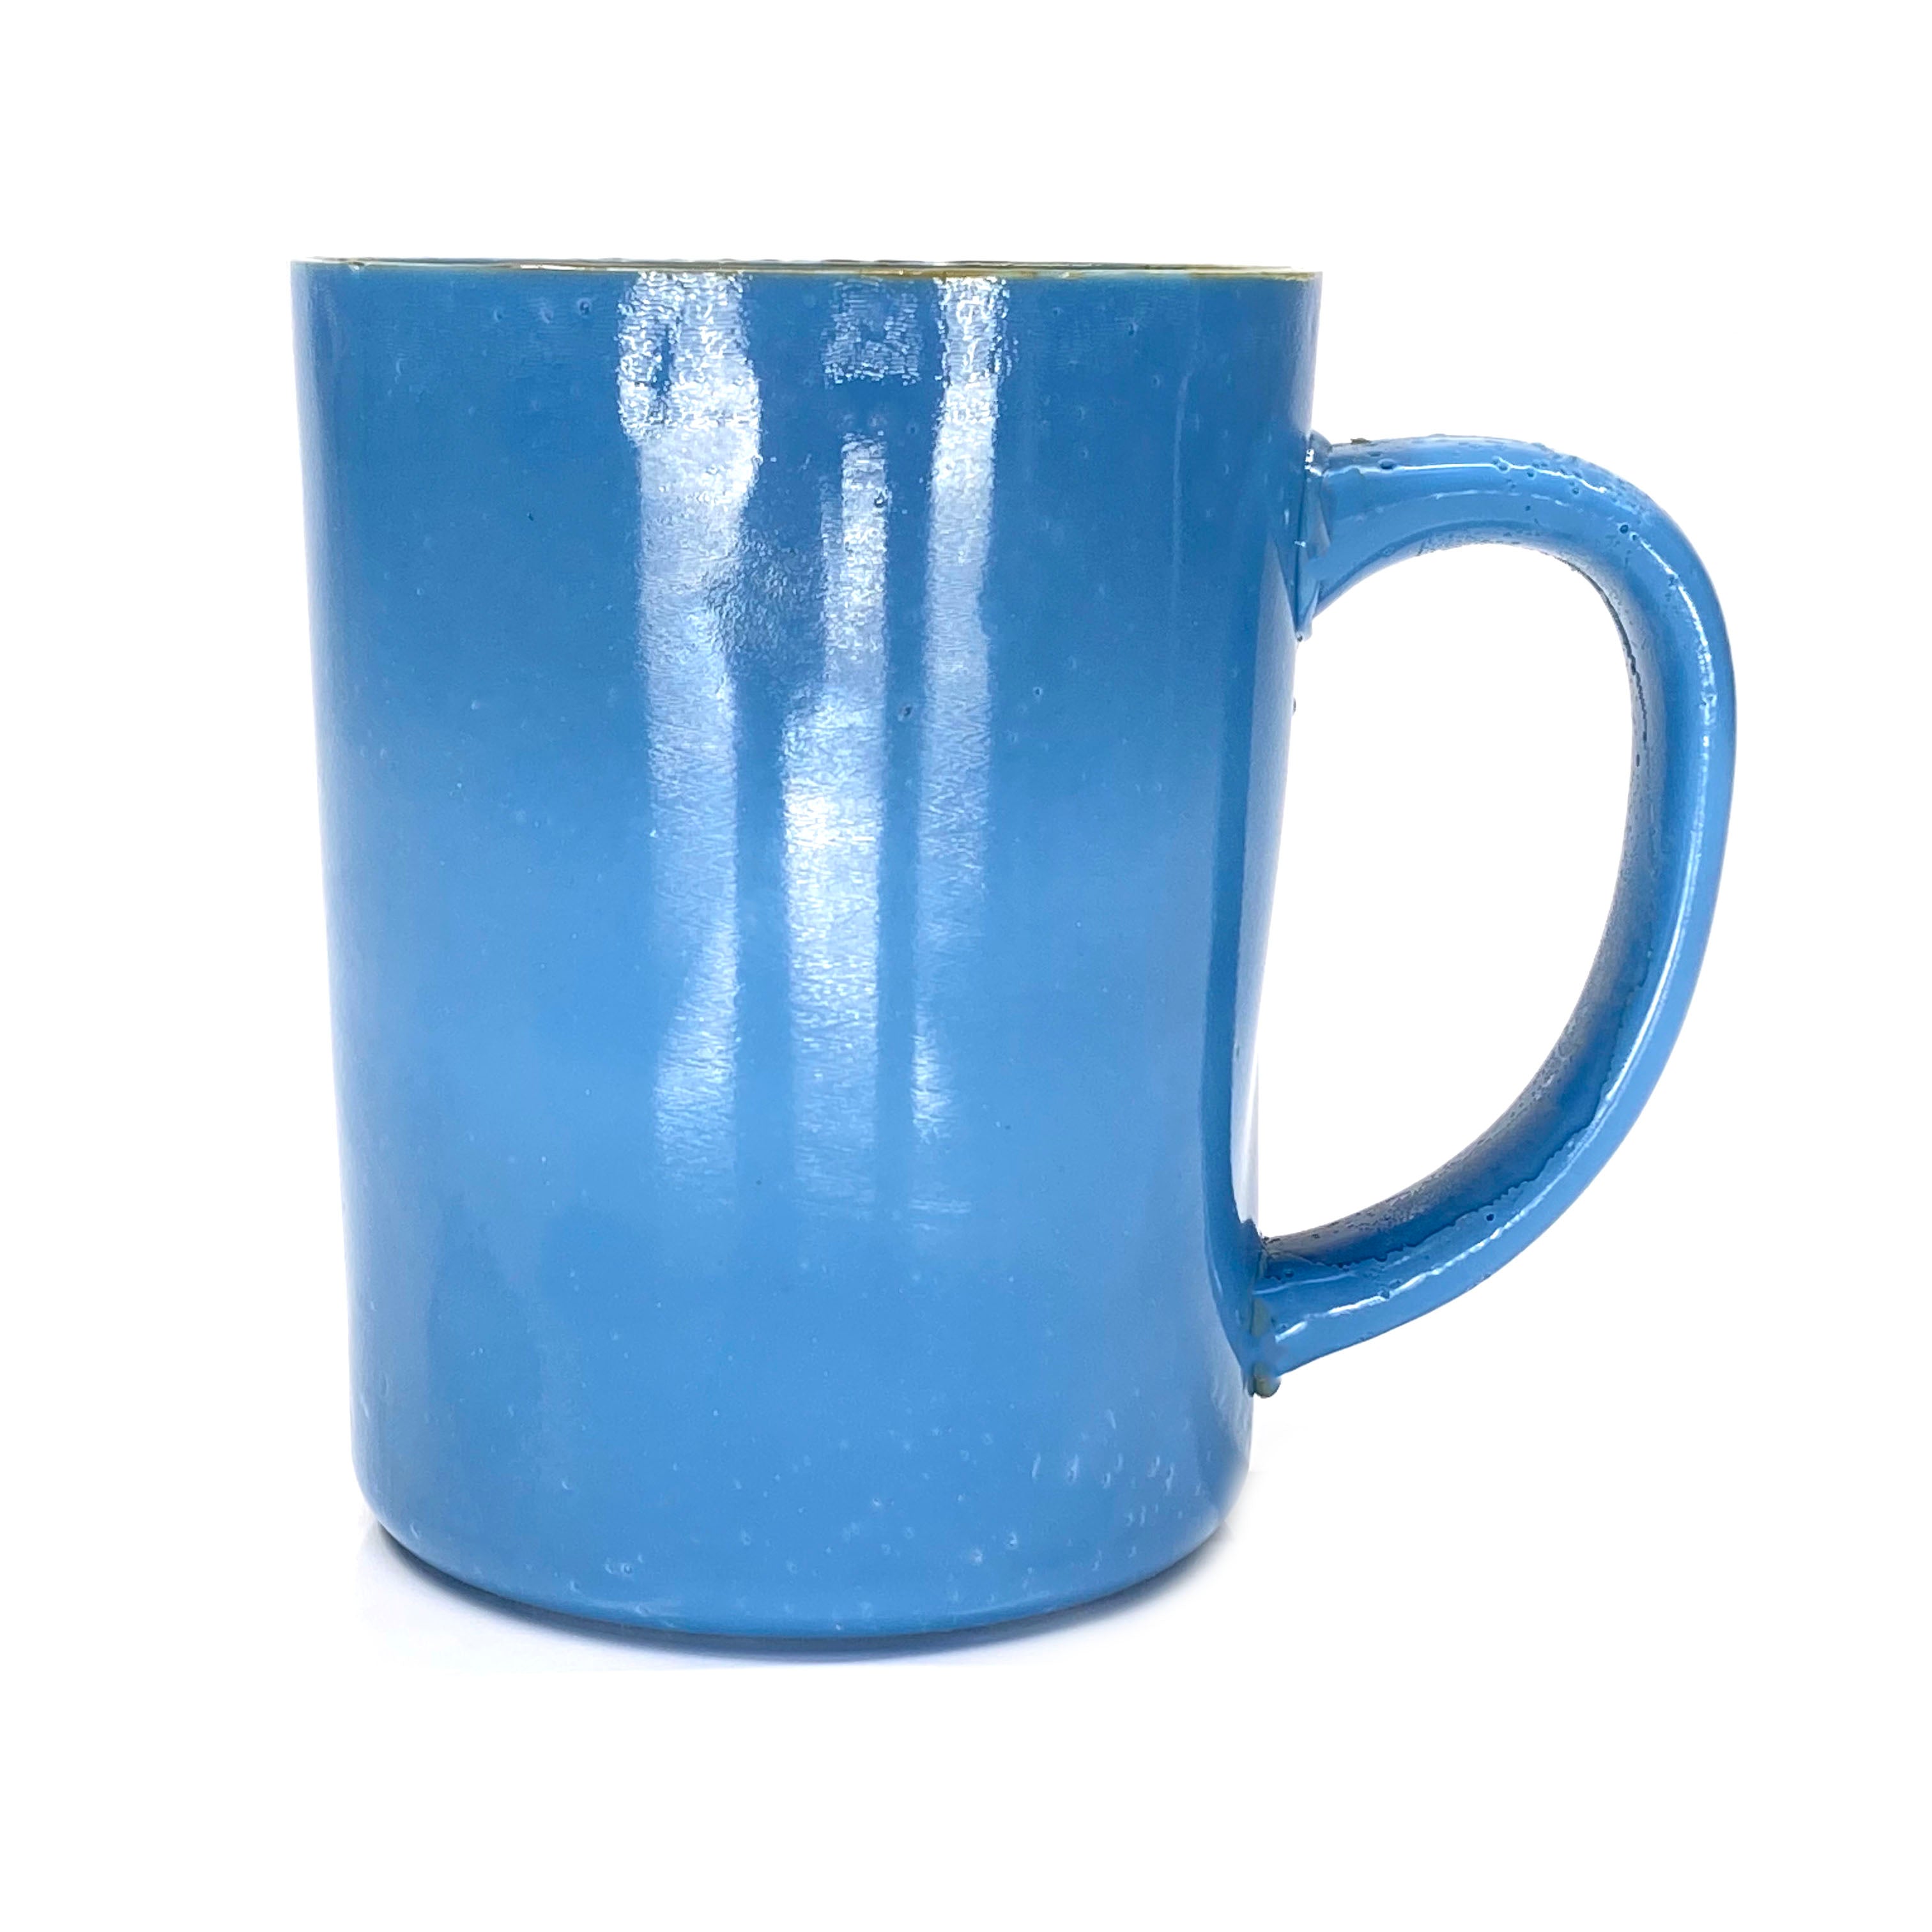 SMASHProps Breakaway Large Mug Prop - LIGHT BLUE opaque - Light Blue,Opaque